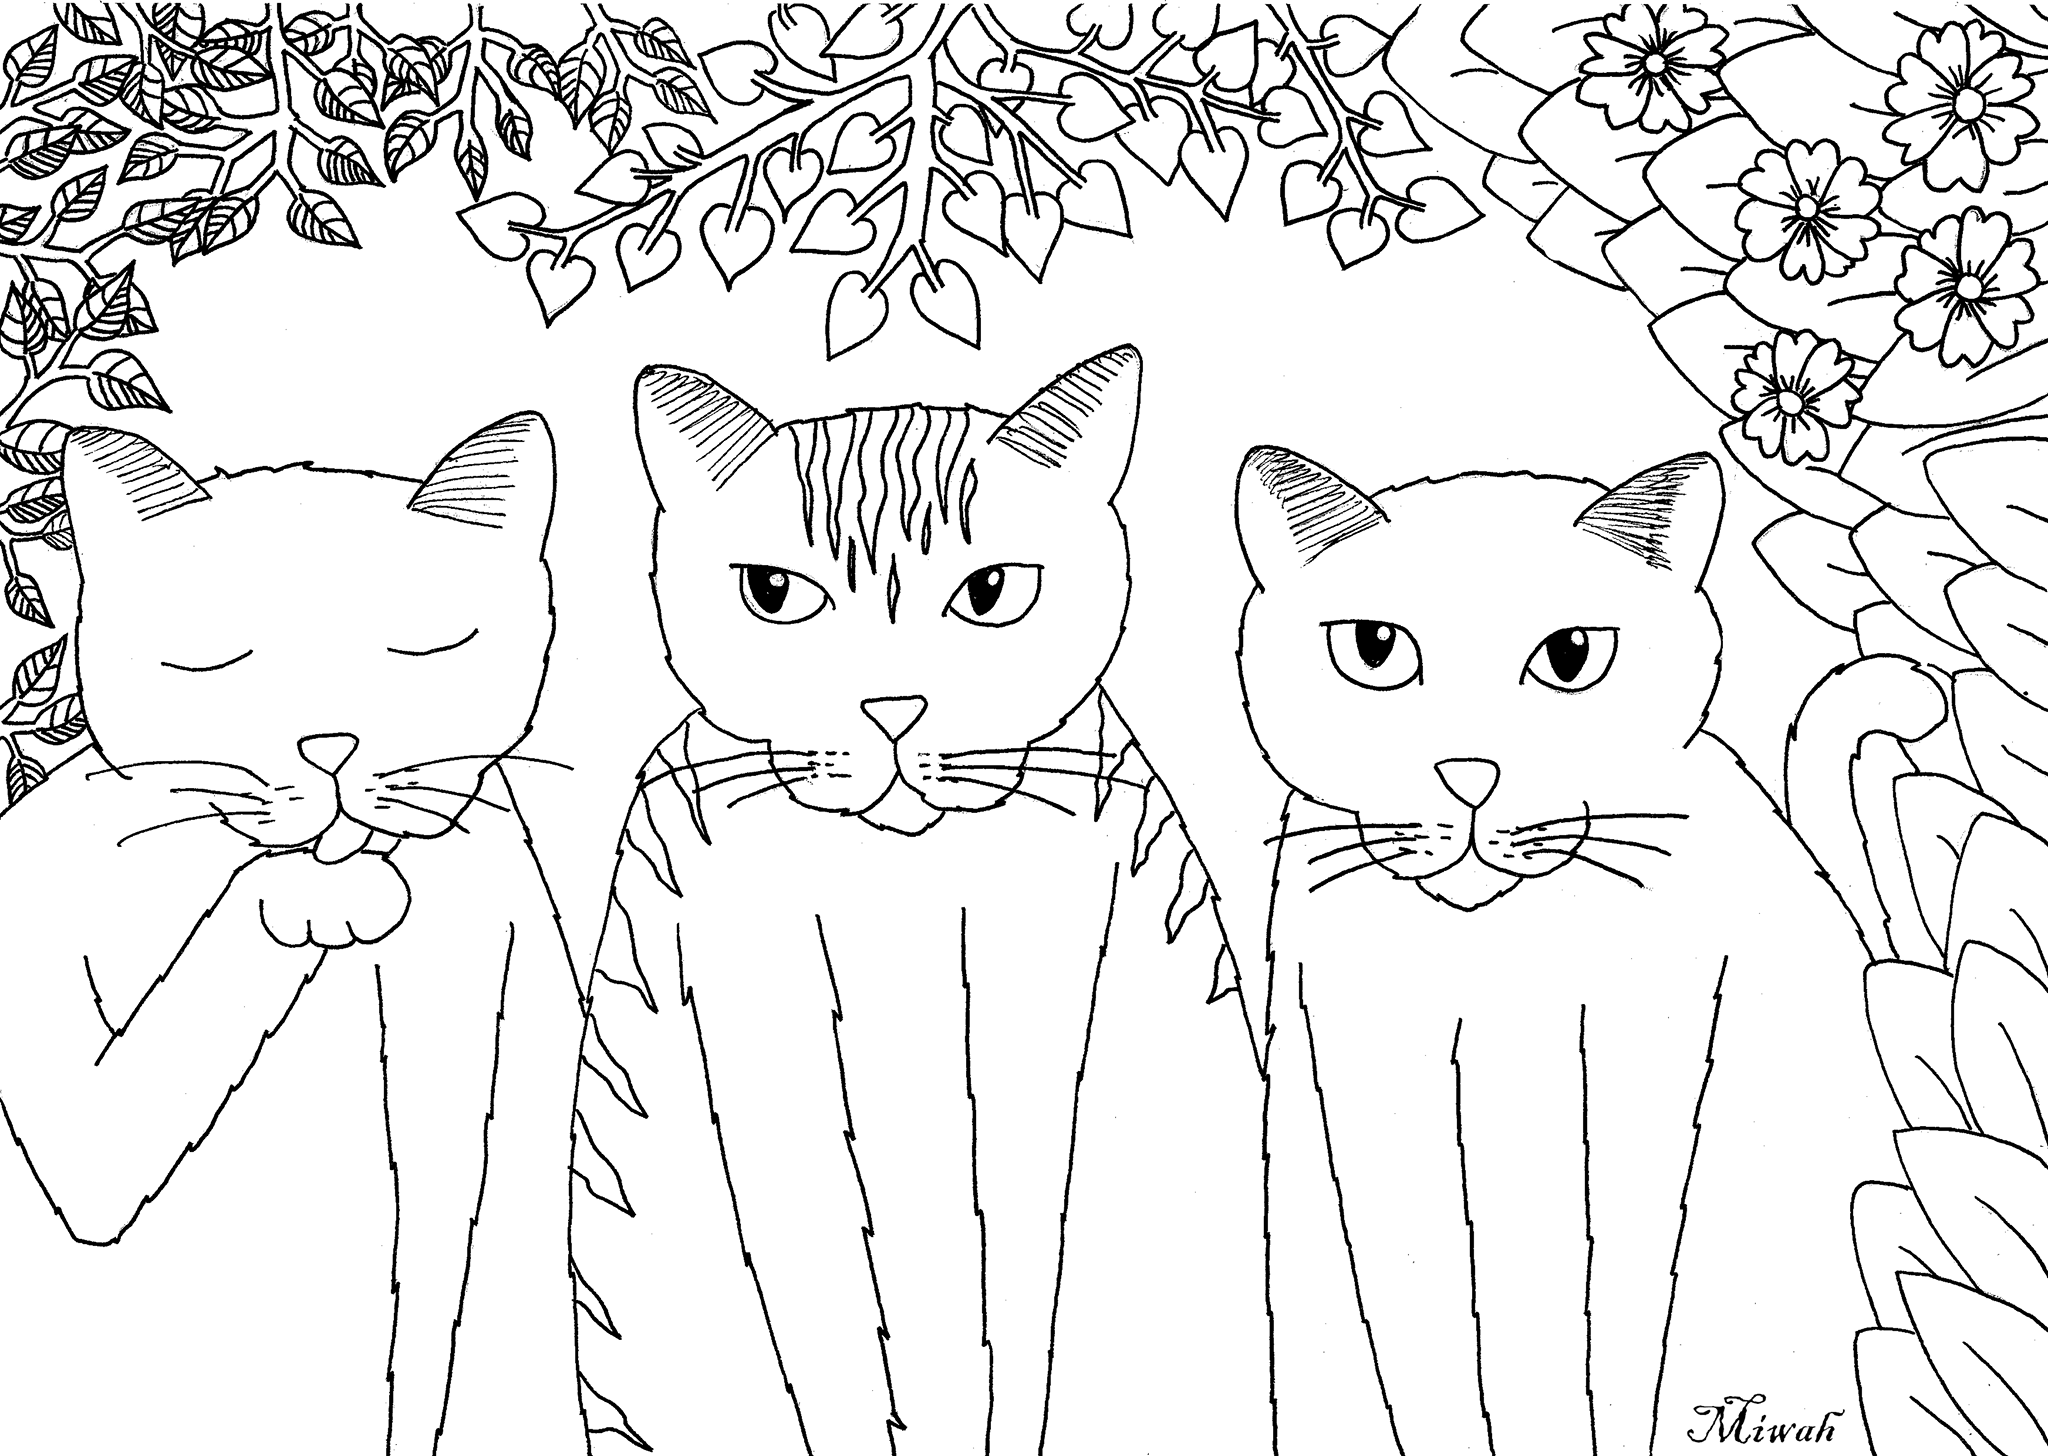 Desenhos grátis para colorir de Gatos para imprimir e colorir, para crianças, Artista : Miwah